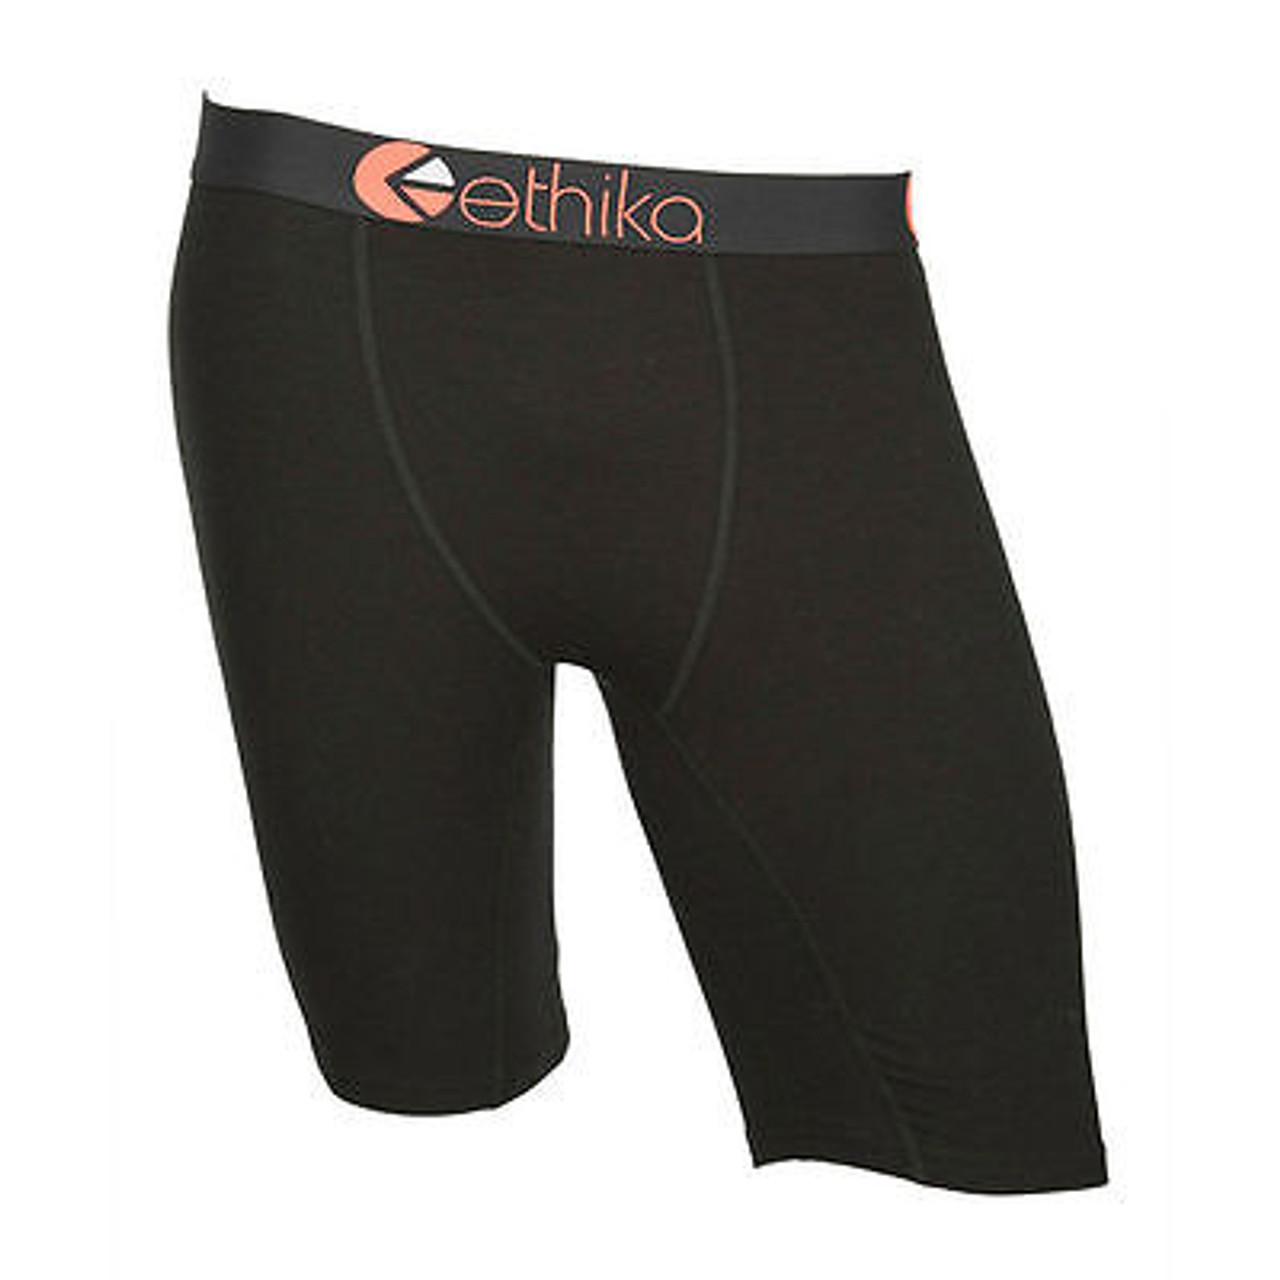 Ethika Men's Underwear Boxer Brief The Staple Fit